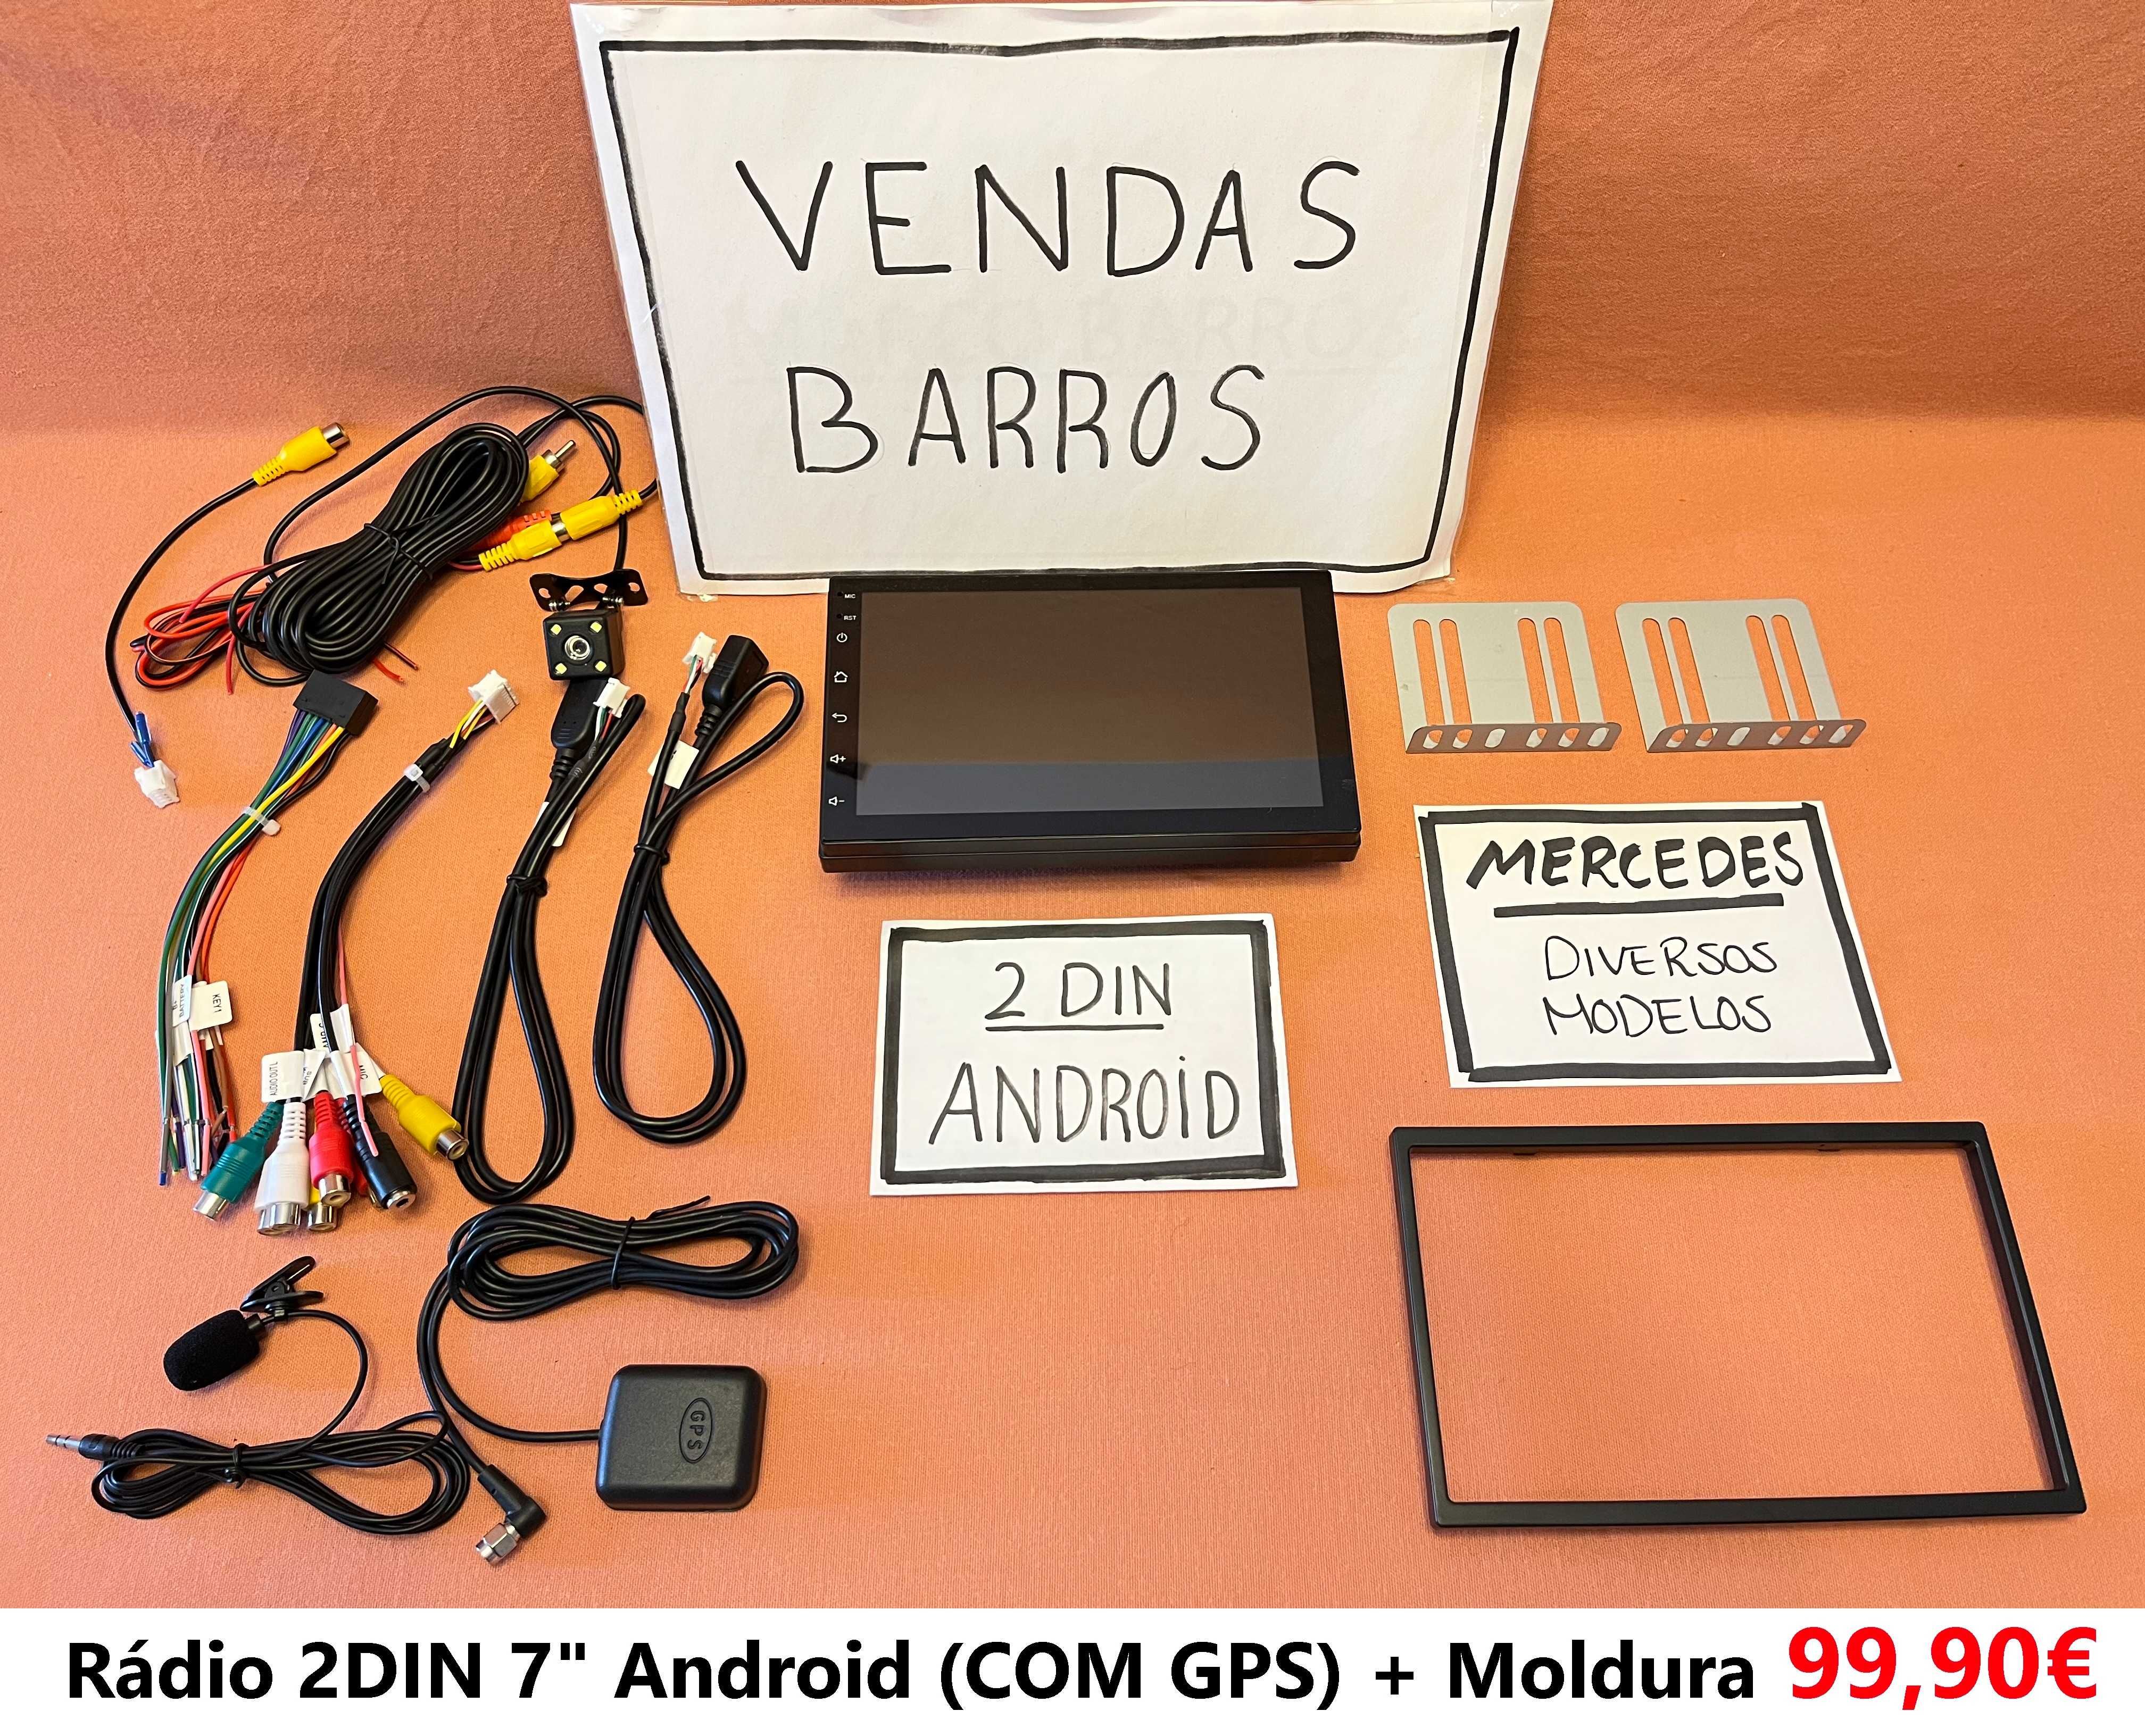 Rádio 2DIN • MERCEDES • W163 W168 W208 W202 W210 R170 W140 • Android